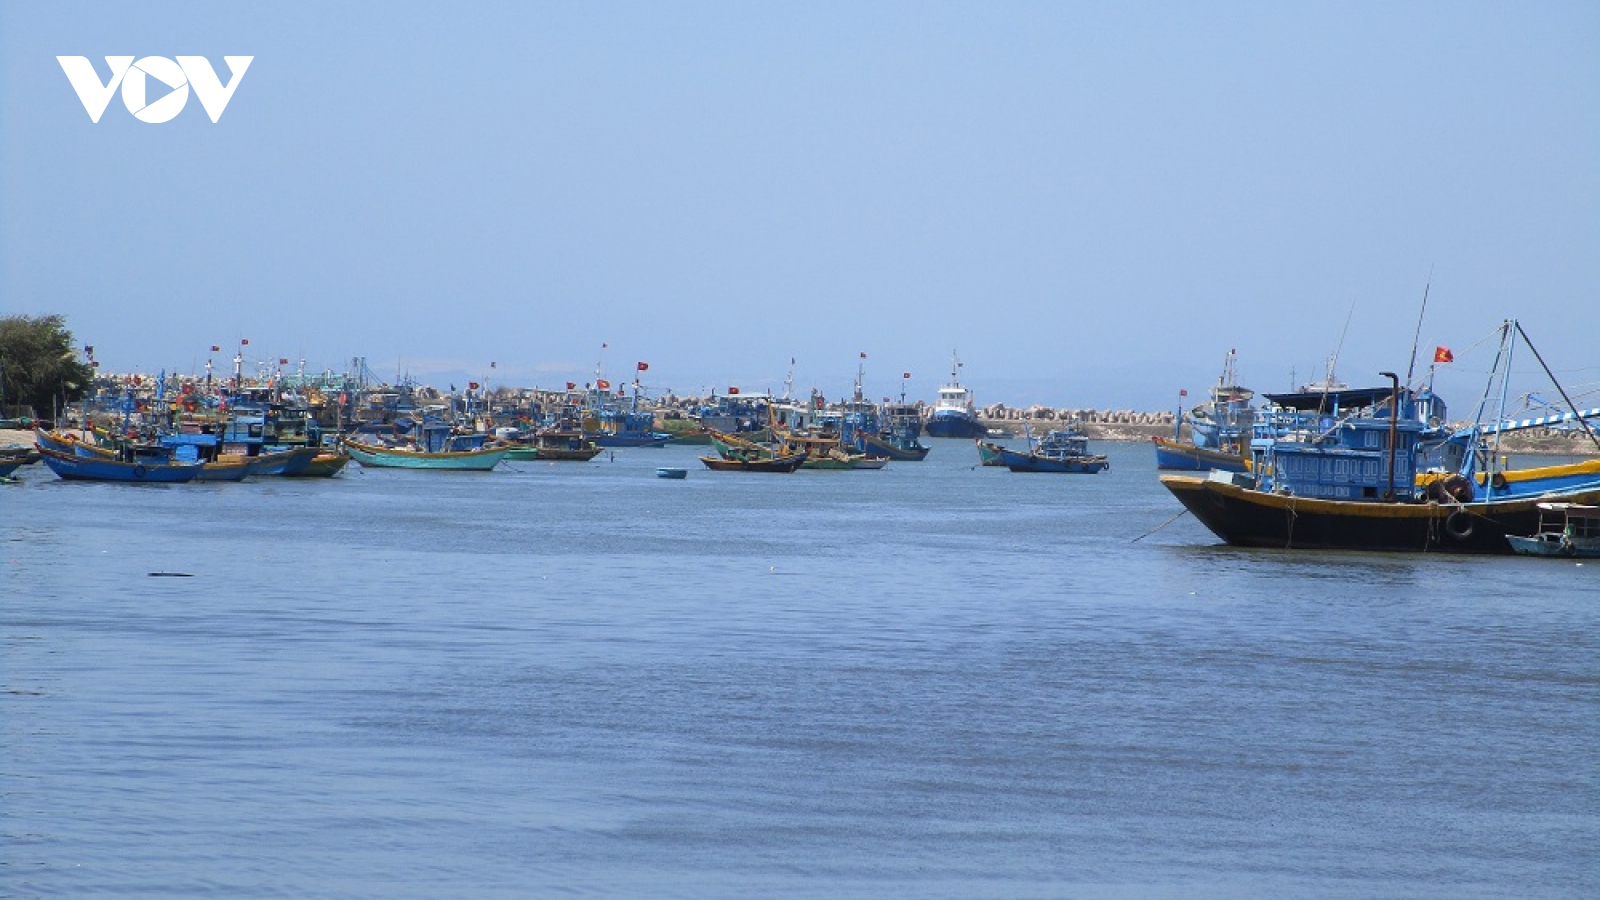 Khẩn trương có phương án đưa tàu hàng thoát cạn trên vùng biển Bình Thuận